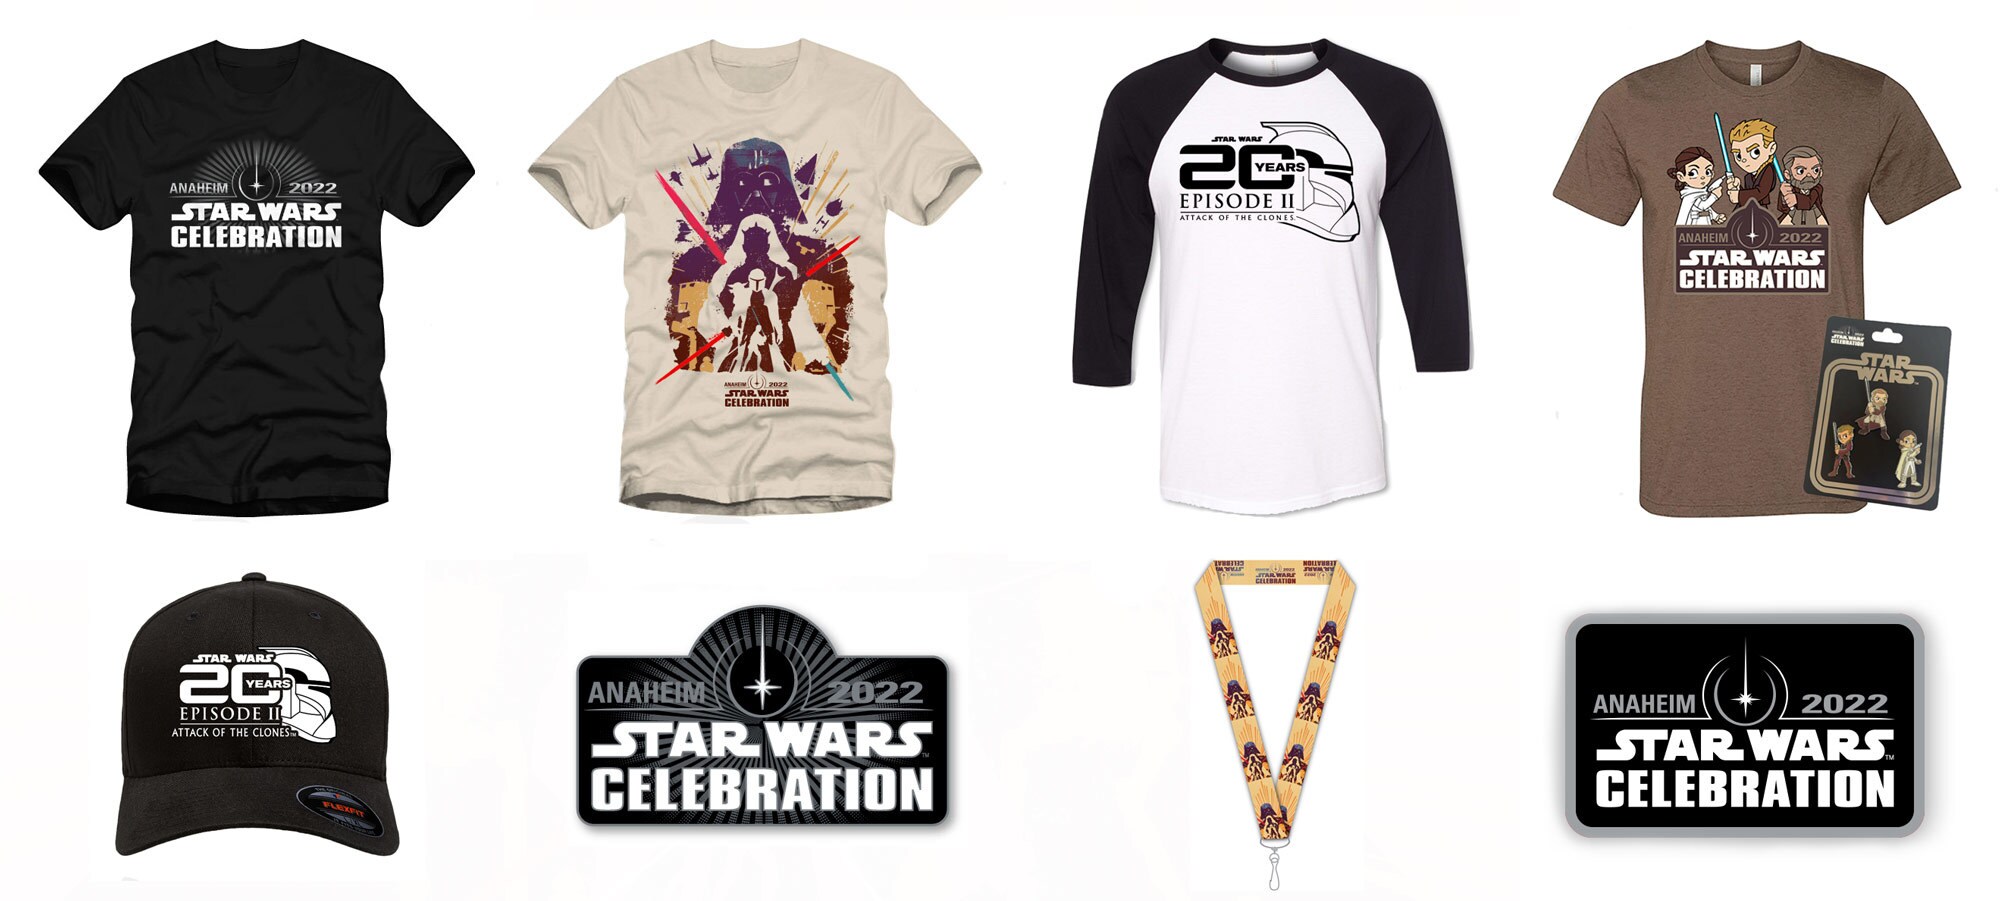 Star Wars Celebration Anaheim 2022 merchandise 